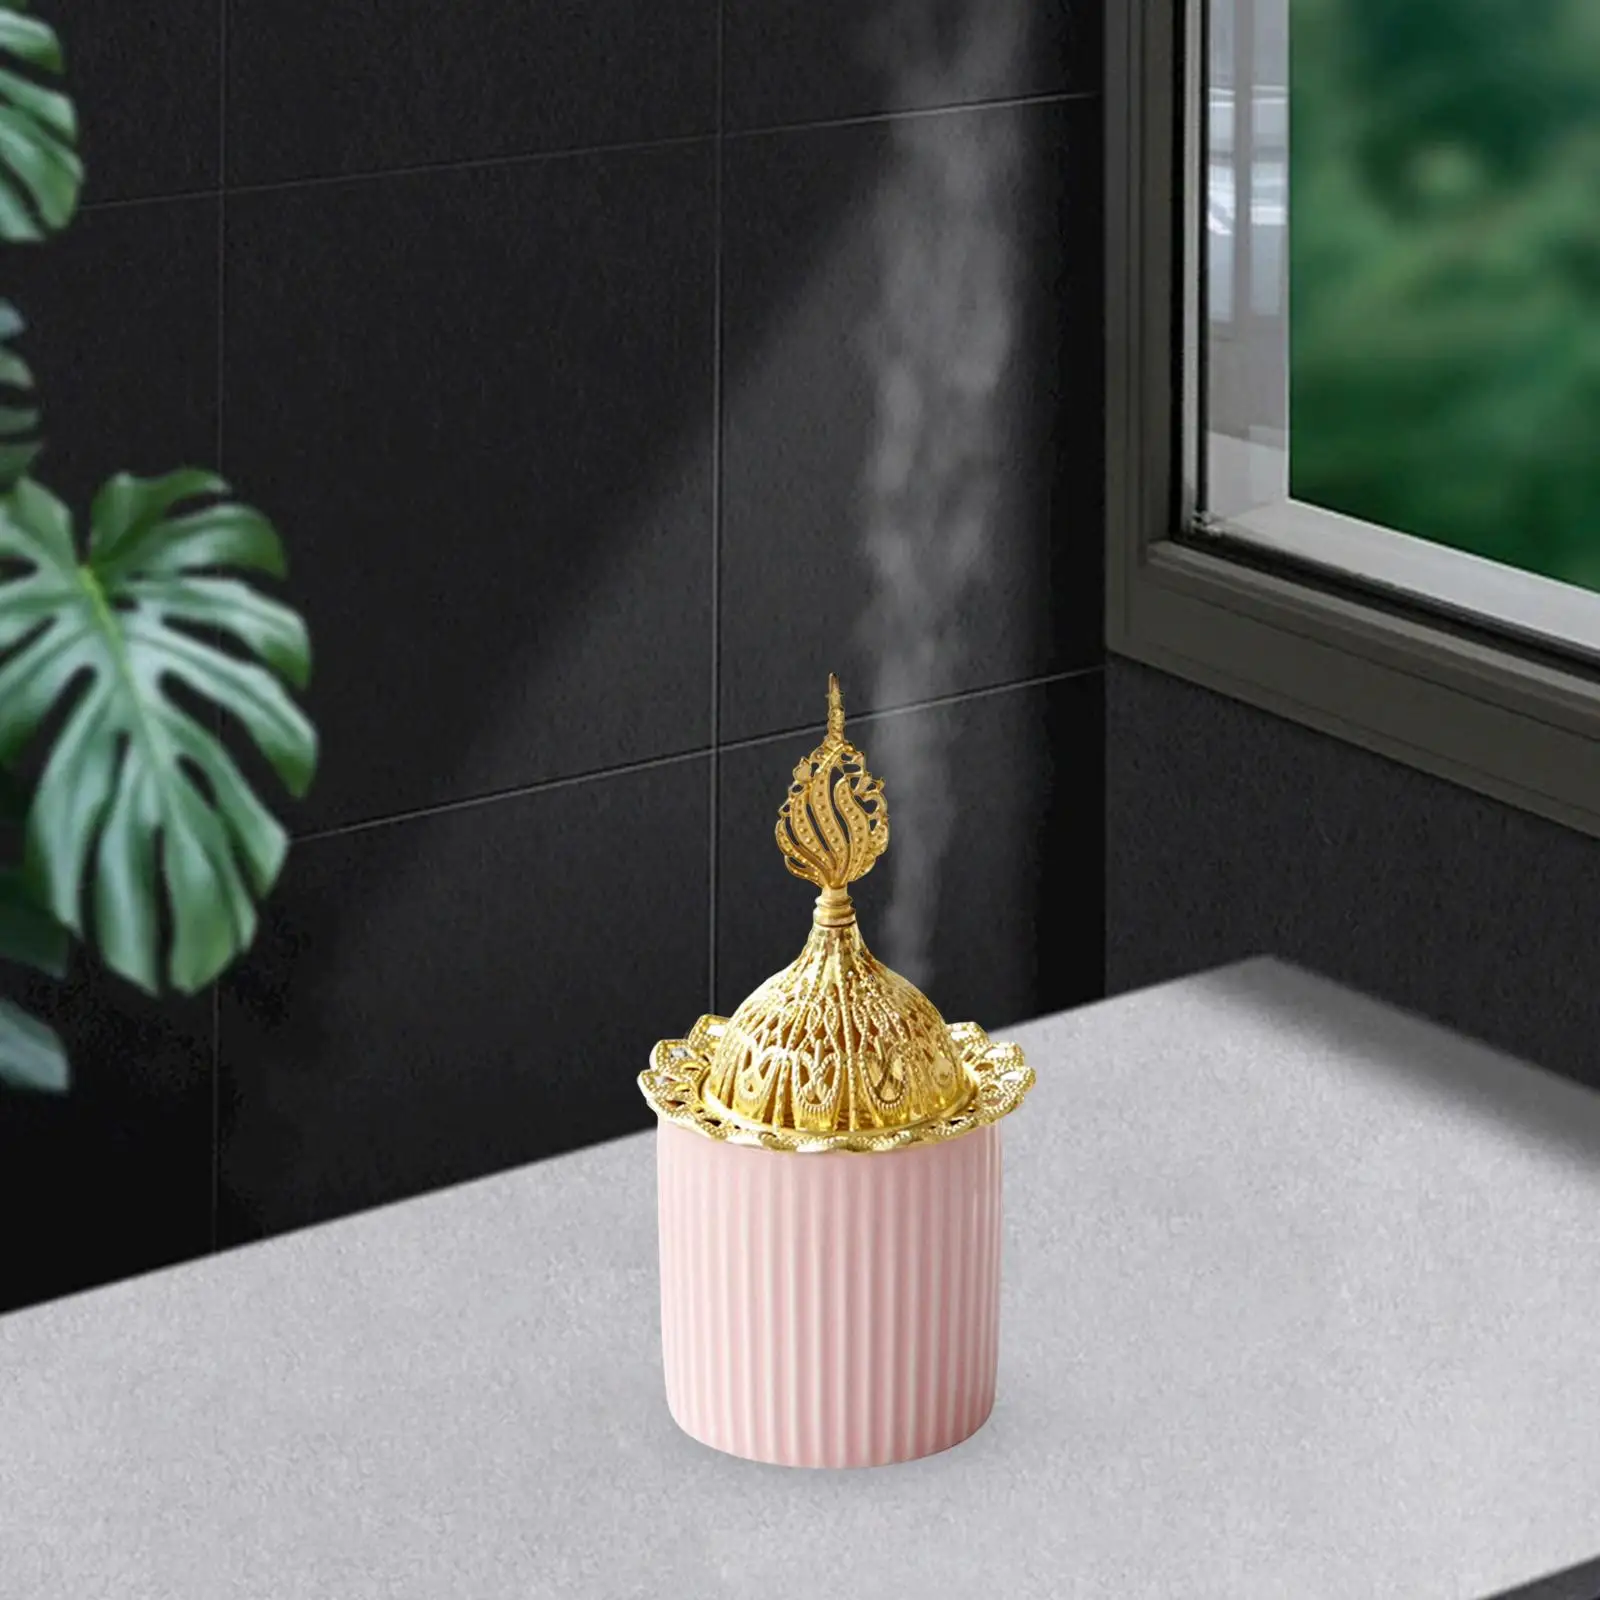 Ceramic Incense Cone Holder Creative Incense Burner Holder for Decorations